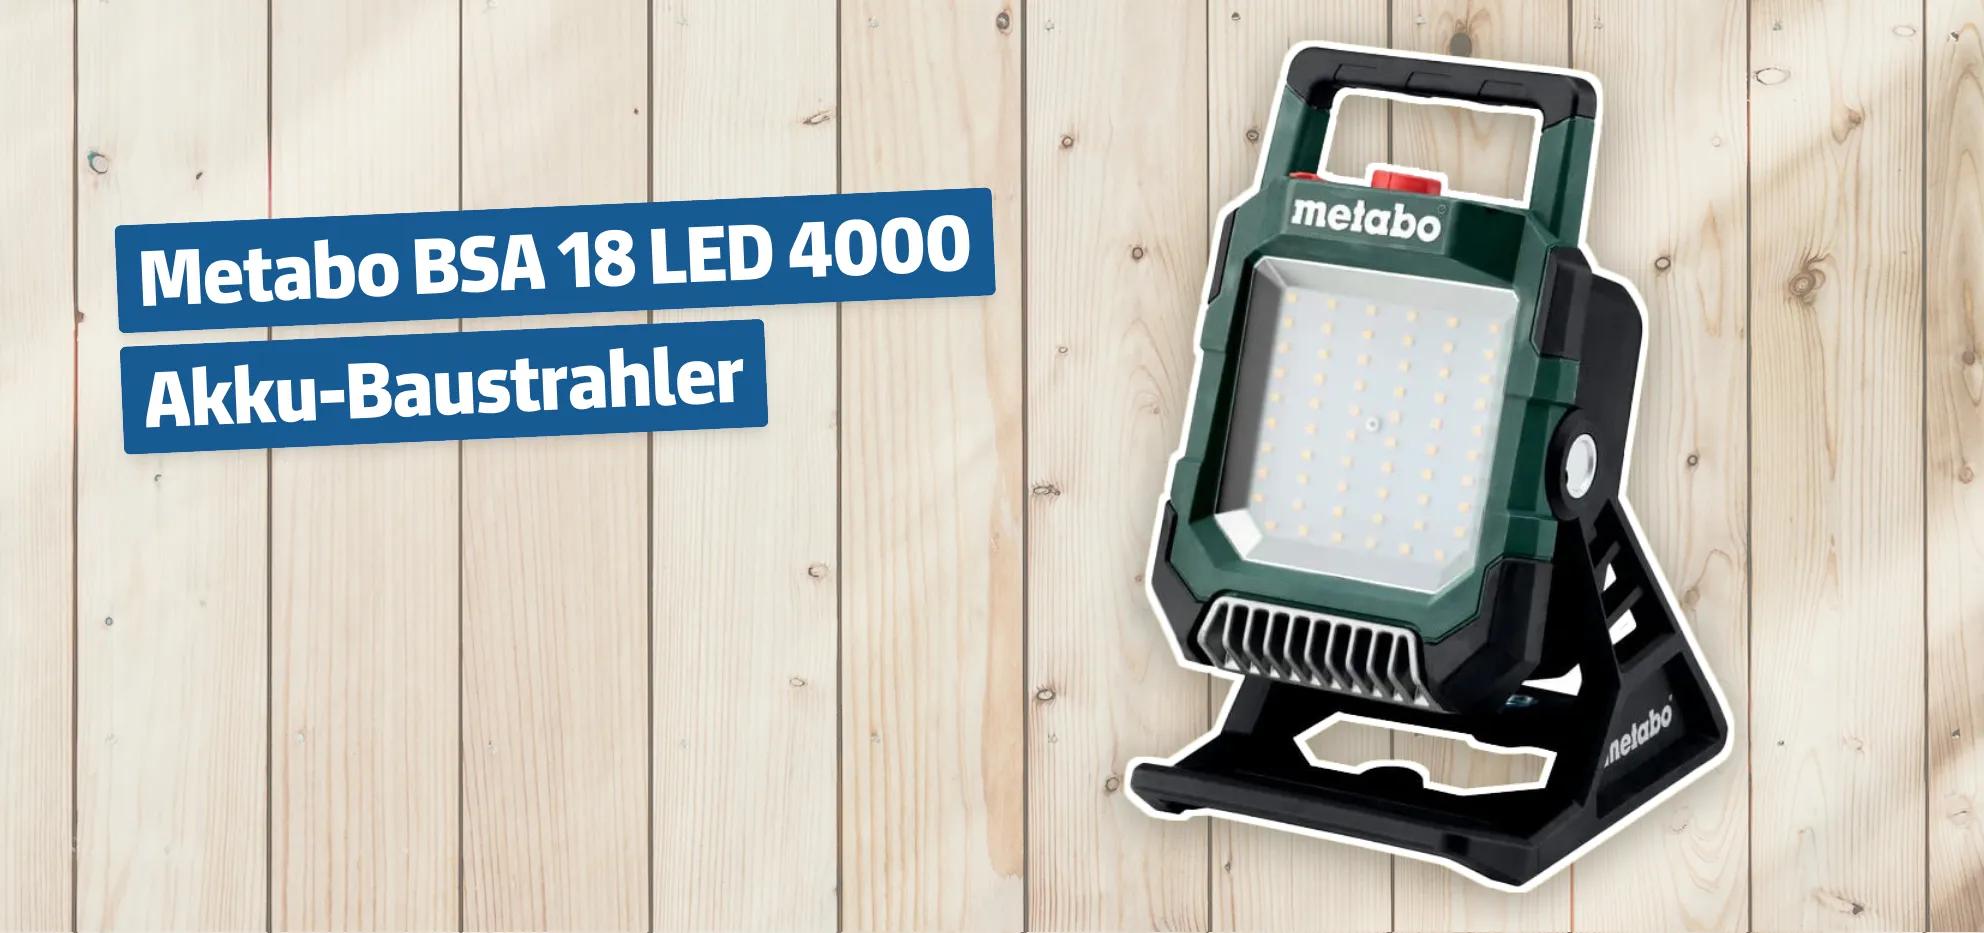 Metabo BSA 18 LED 4000 Akku-Baustrahler